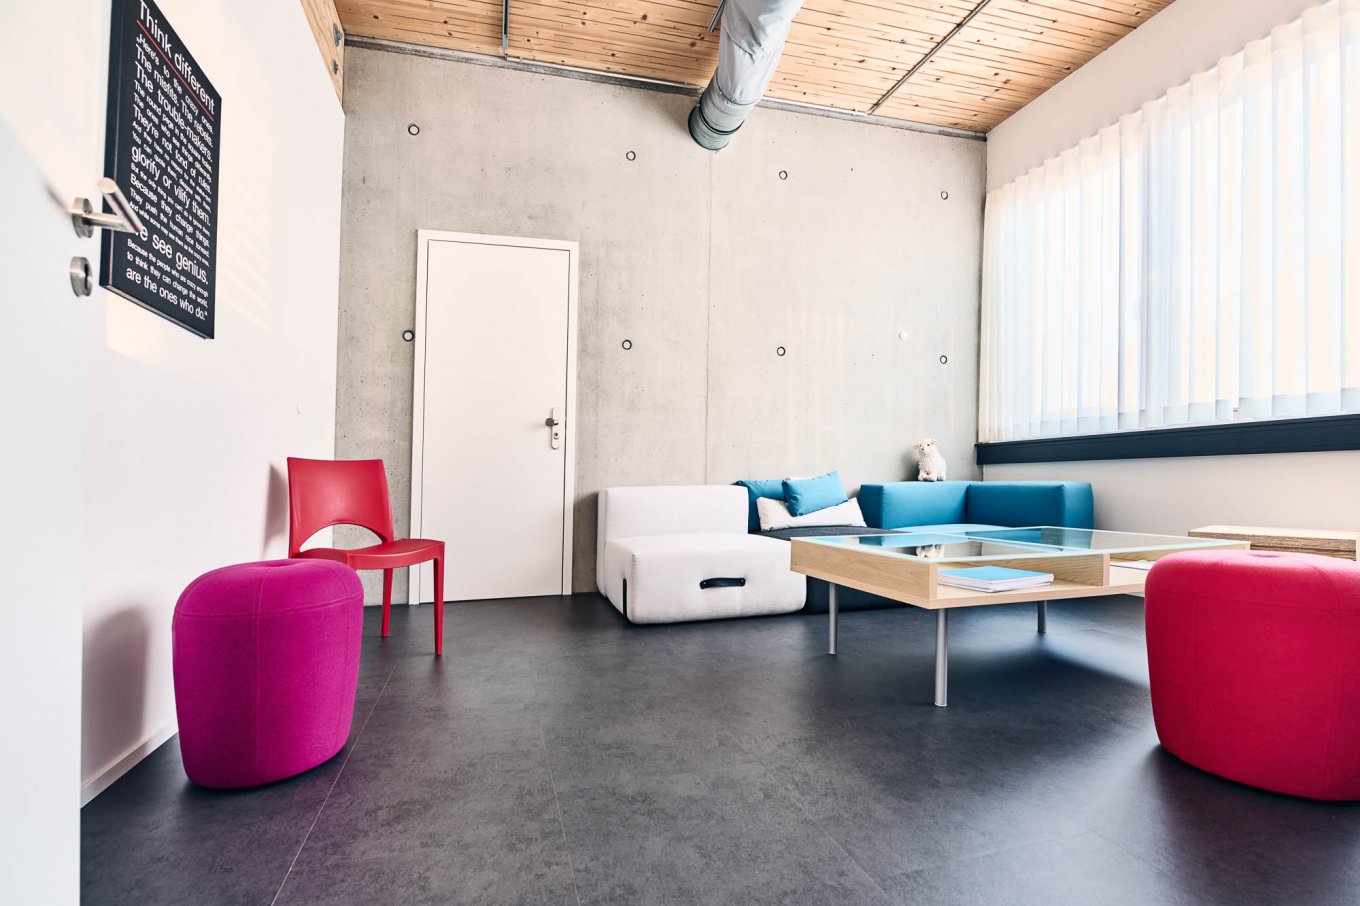 wineo PURLINE Bioboden dunkle Fliese Bodenbelag Fußboden im Pausenraum Sofa Stühle moderne Einrichtung Loft Style